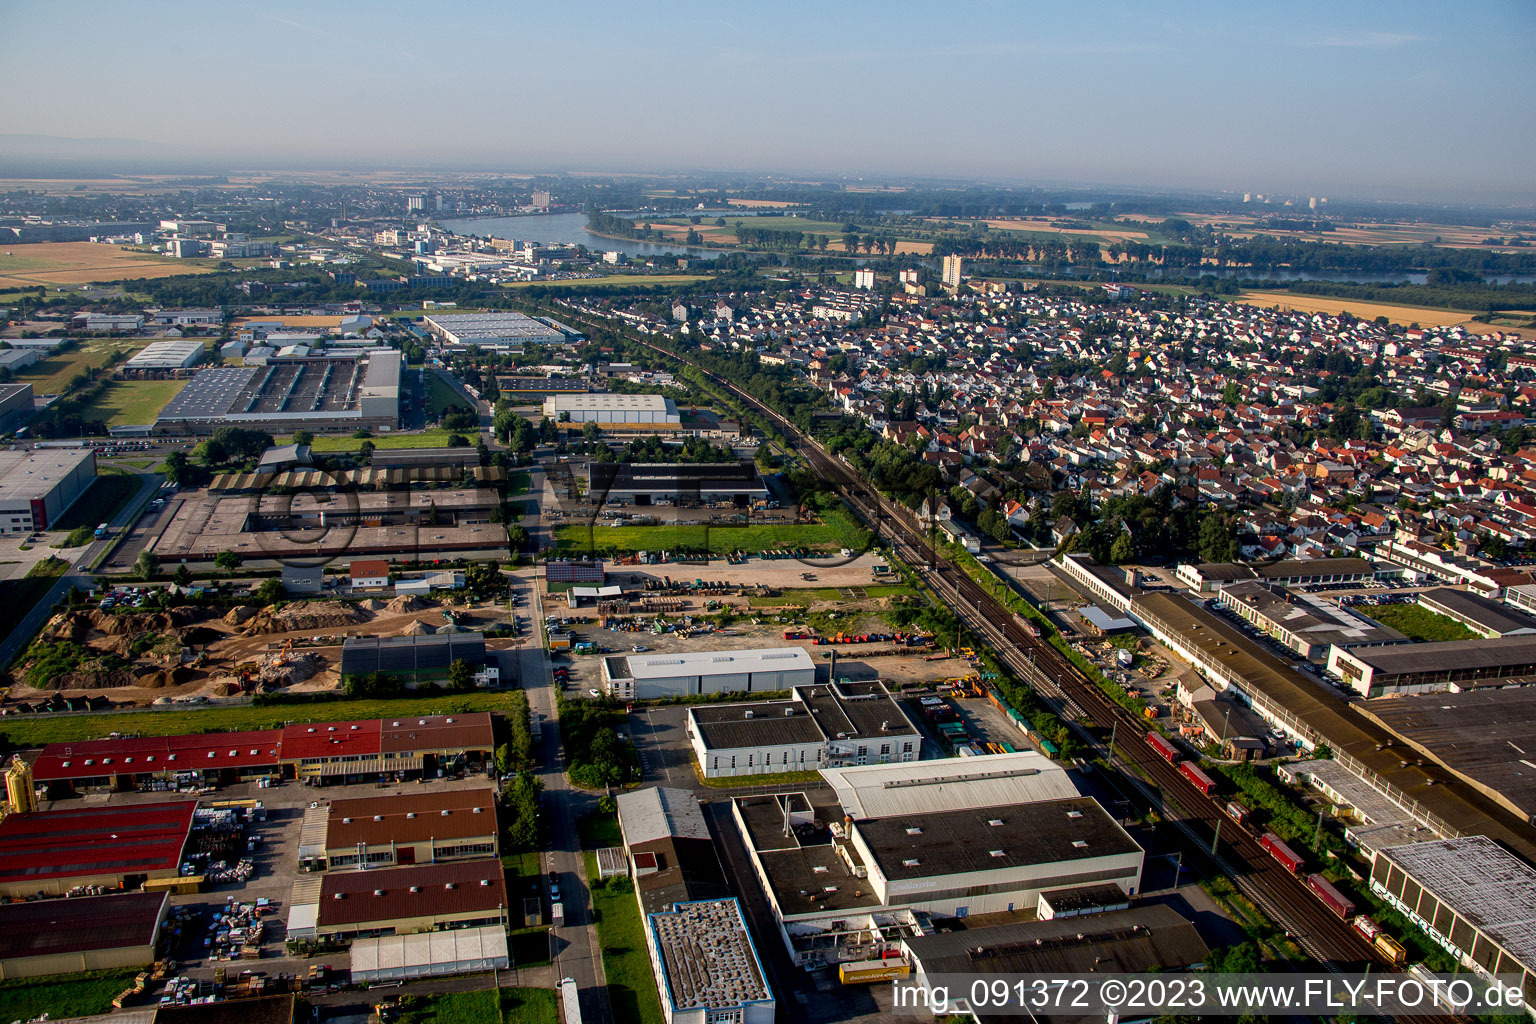 Biebesheim im Bundesland Hessen, Deutschland von der Drohne aus gesehen